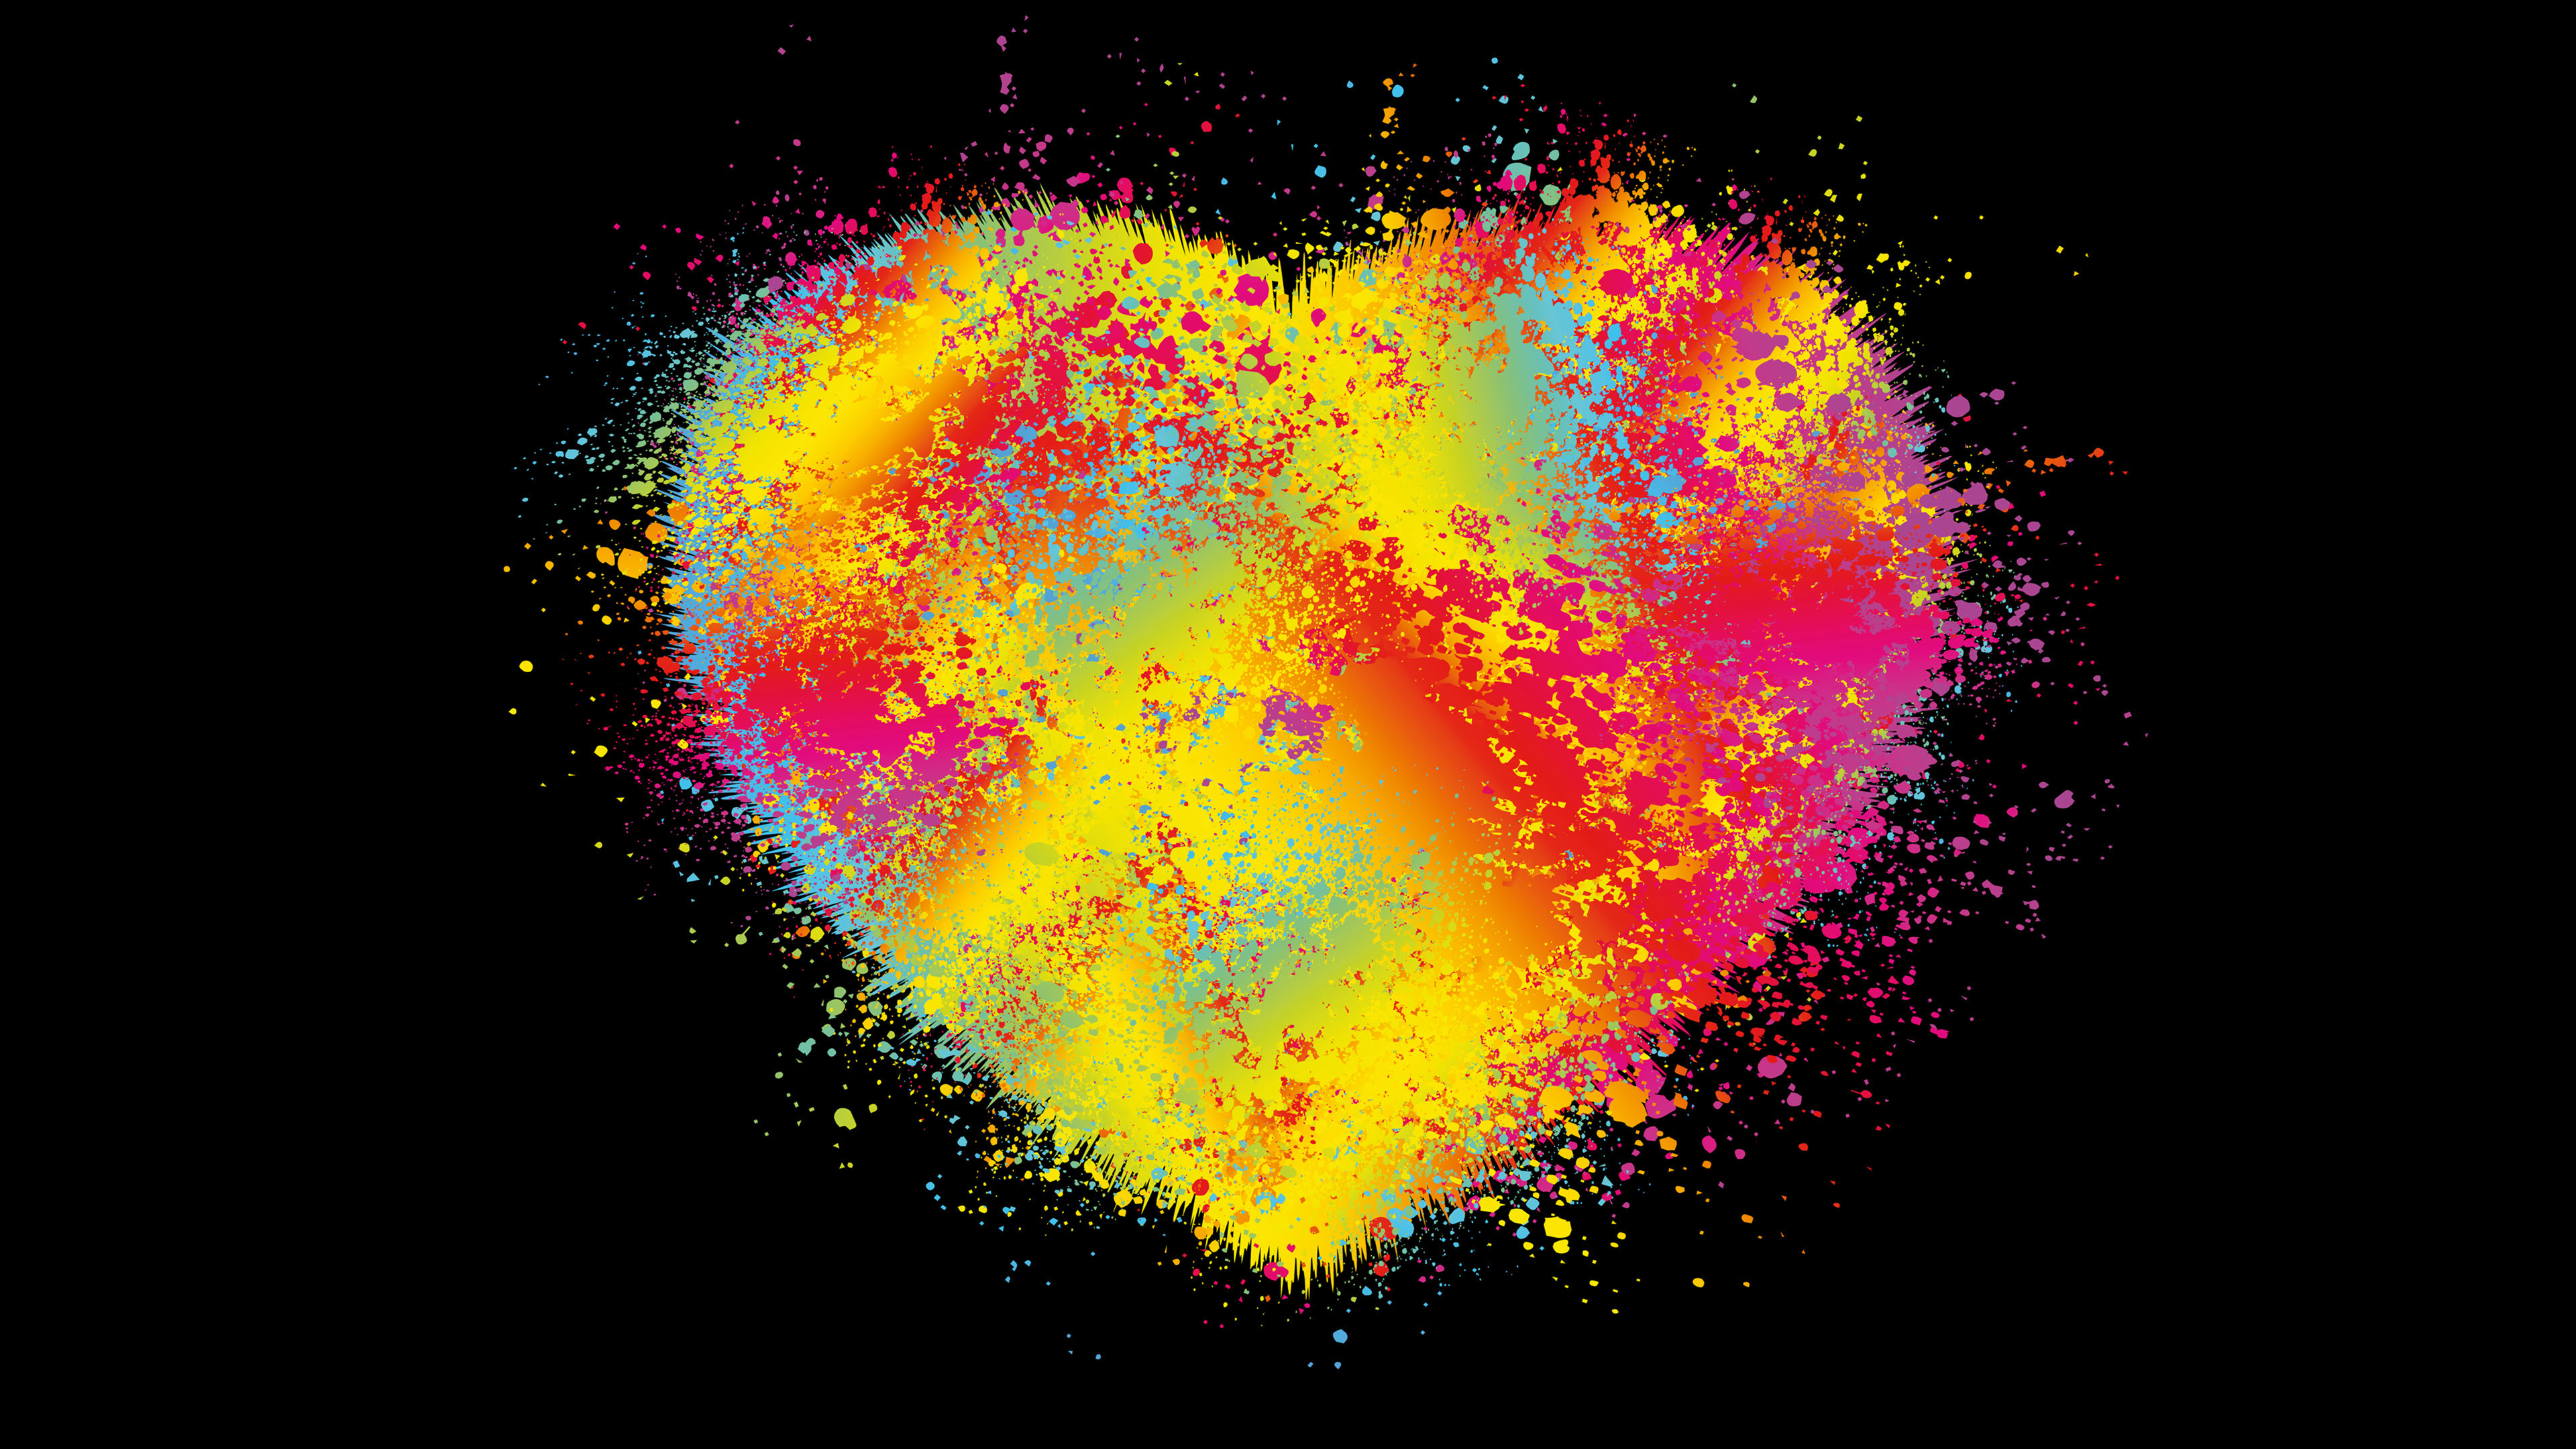 Hình nền máy tính trái tim: Bạn đang cần tìm kiếm một hình nền mới cho máy tính của mình? Hãy thử sử dụng một hình nền trái tim tuyệt đẹp để mang lại sự hài lòng và yêu thích cho máy tính của bạn. Hình ảnh sáng tạo của trái tim sẽ khiến cho bạn cảm thấy vui vẻ và tình yêu.